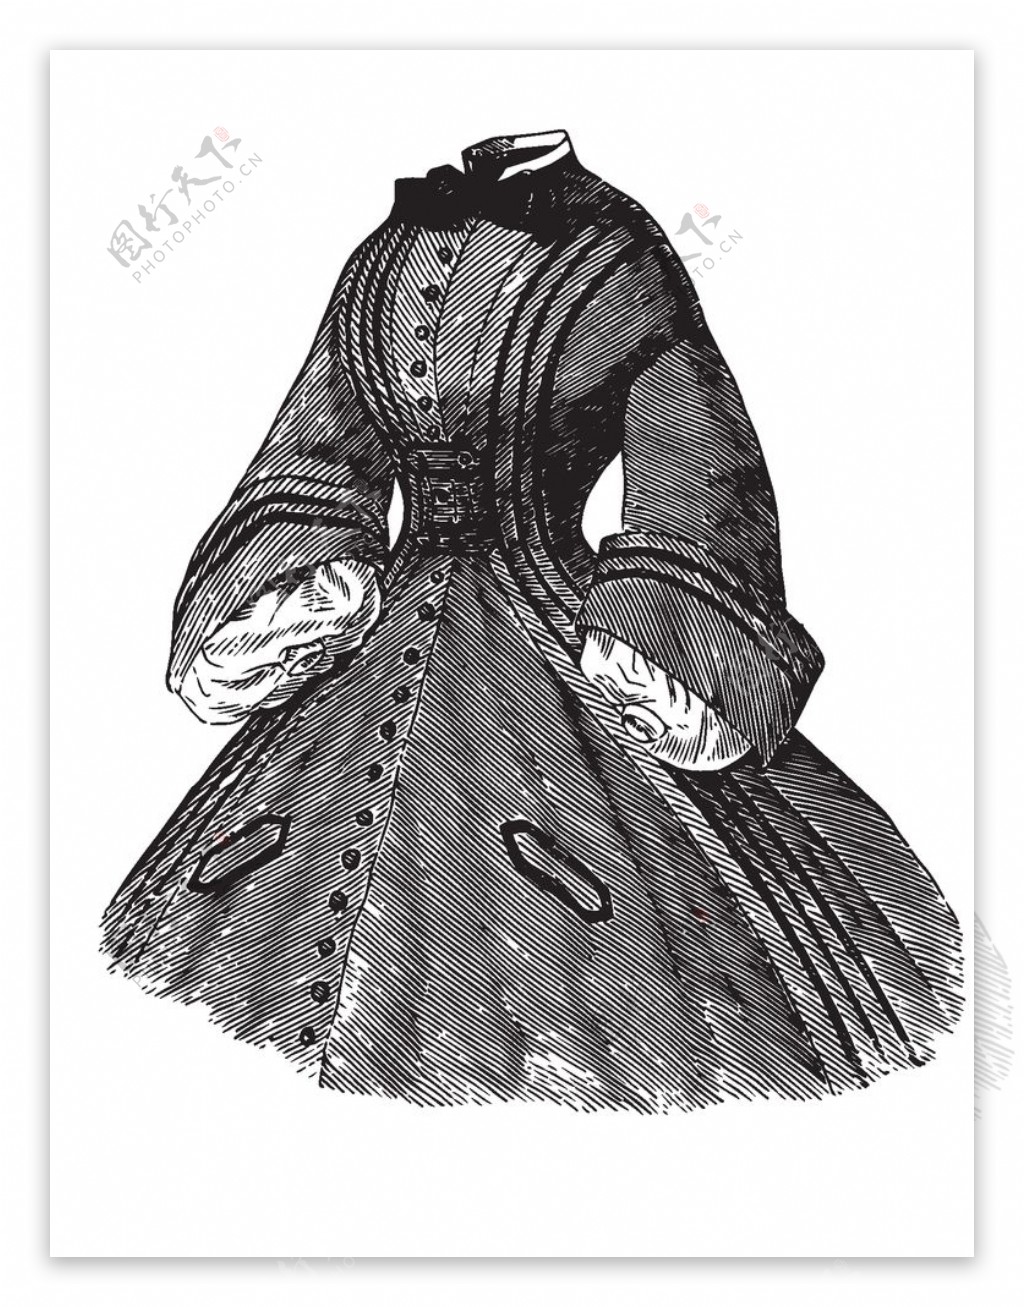 欧式古典女士服装设计